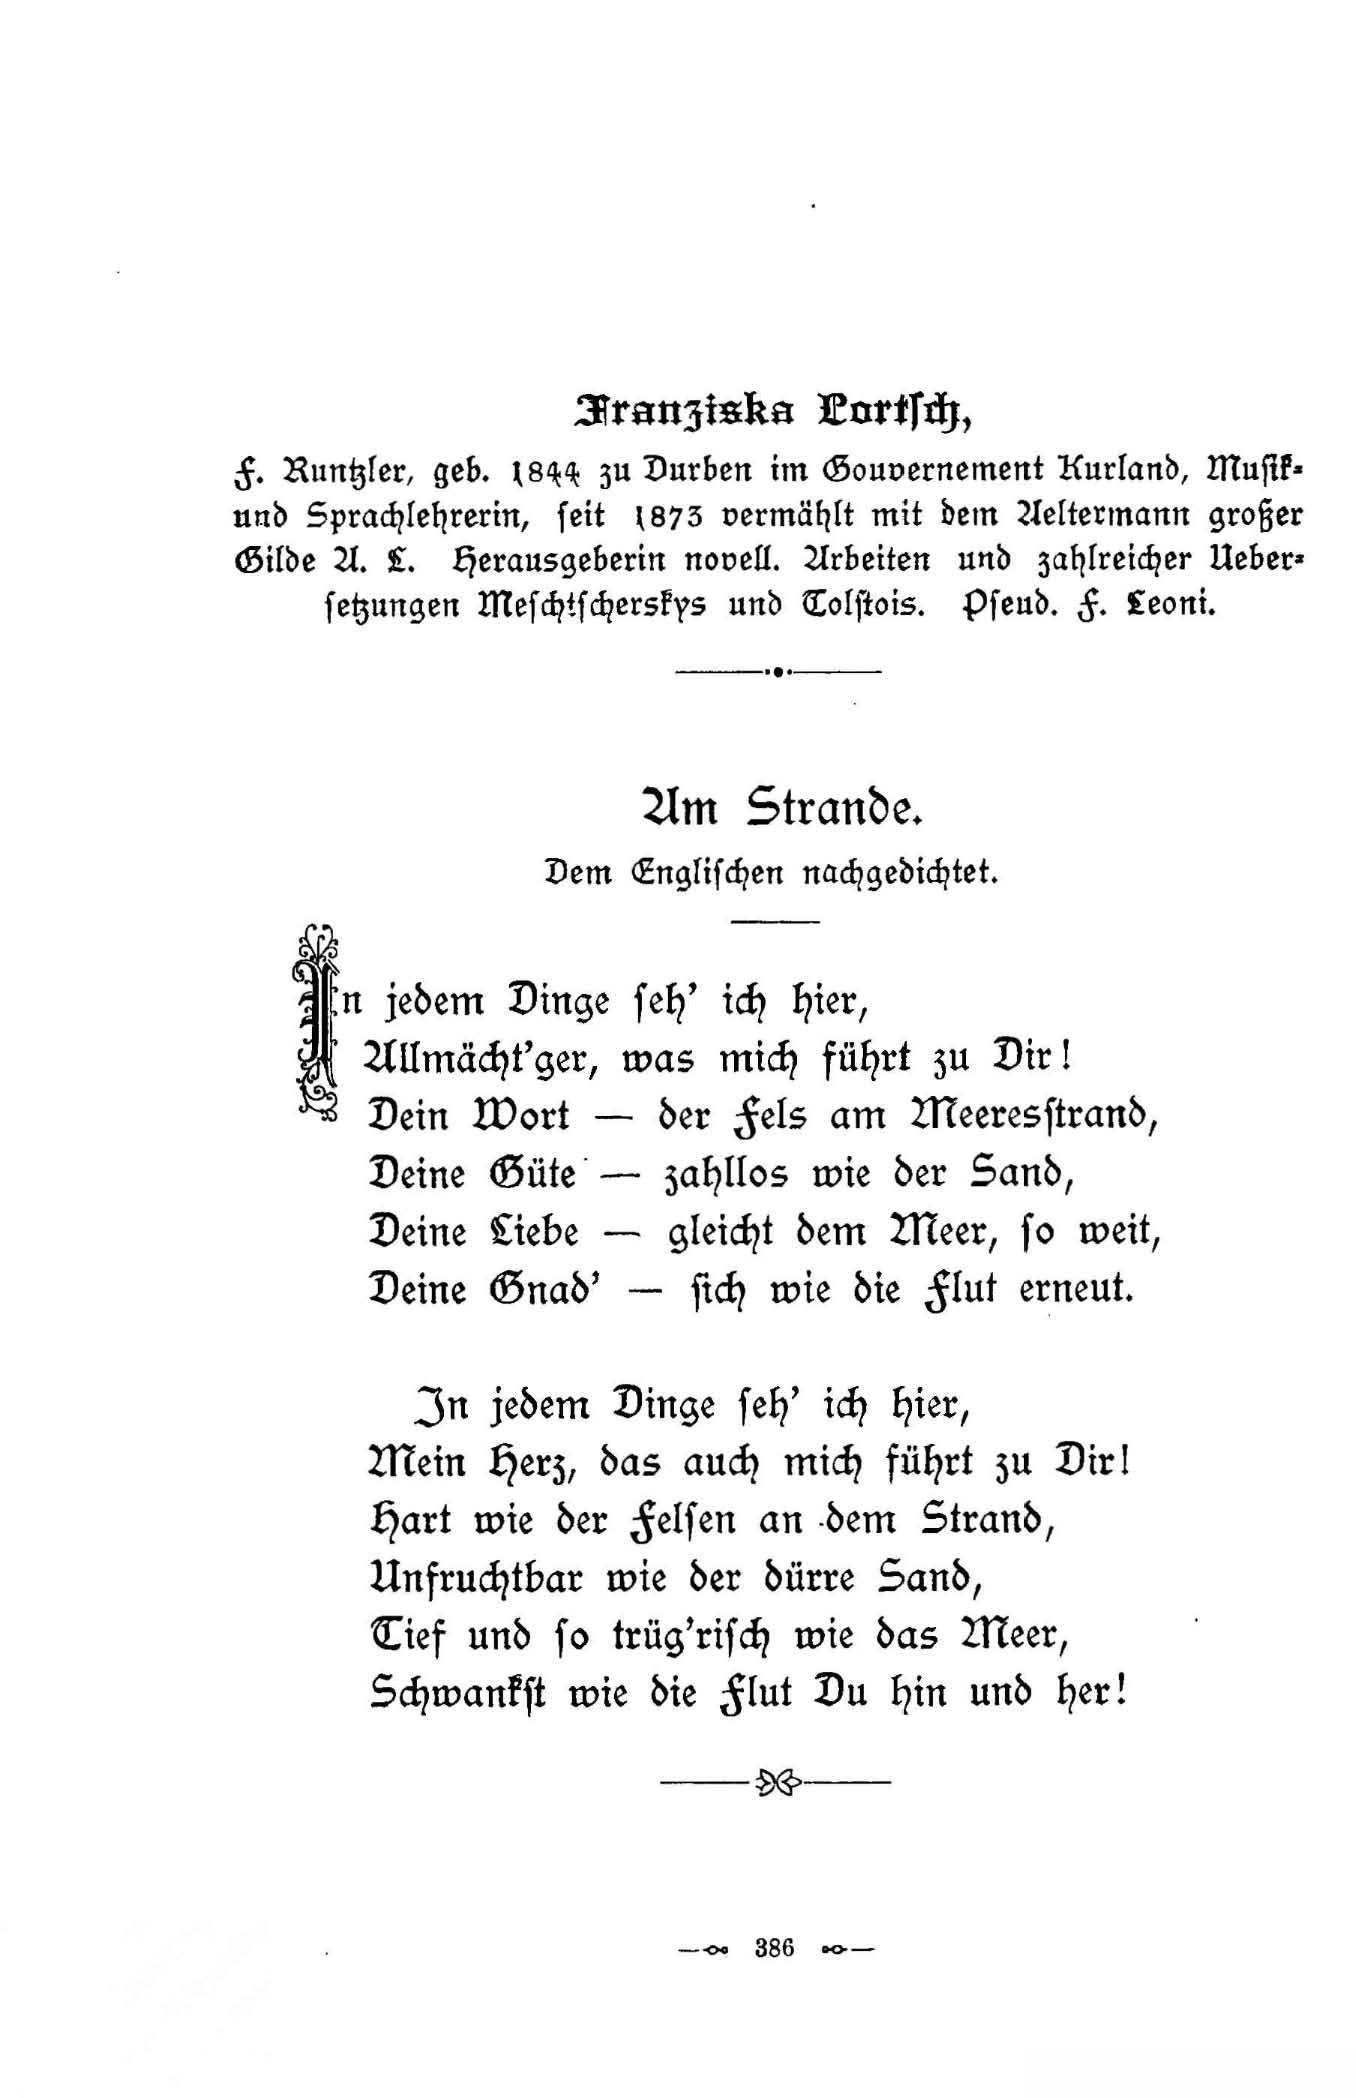 Am Strande (1896) | 1. (386) Основной текст